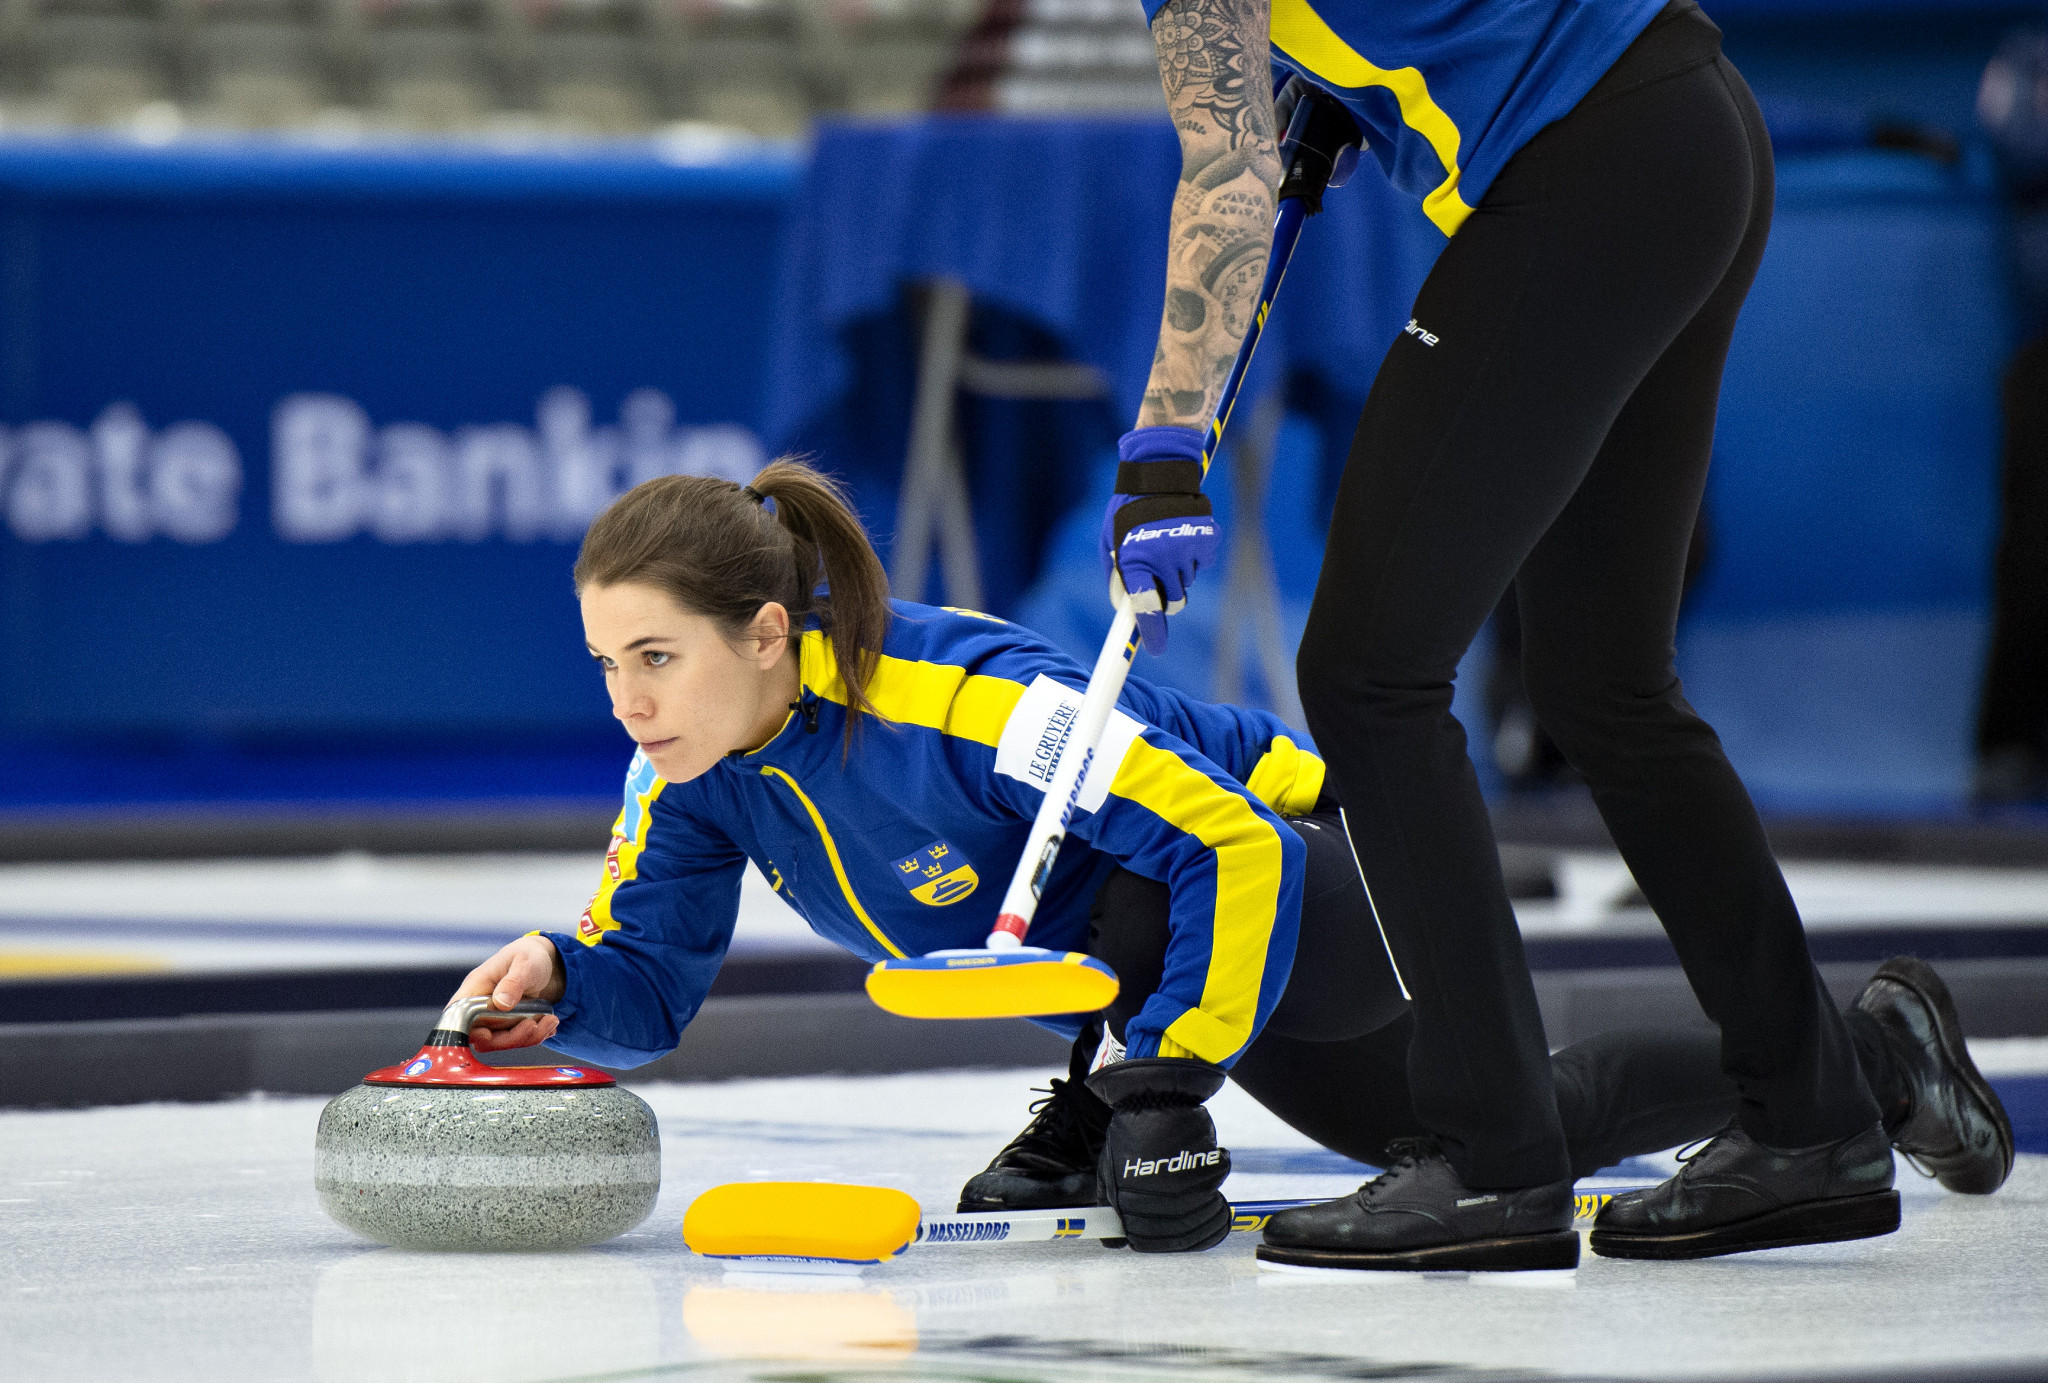 BKT Tires named presenting sponsor for 2021 World Women's Curling Championship